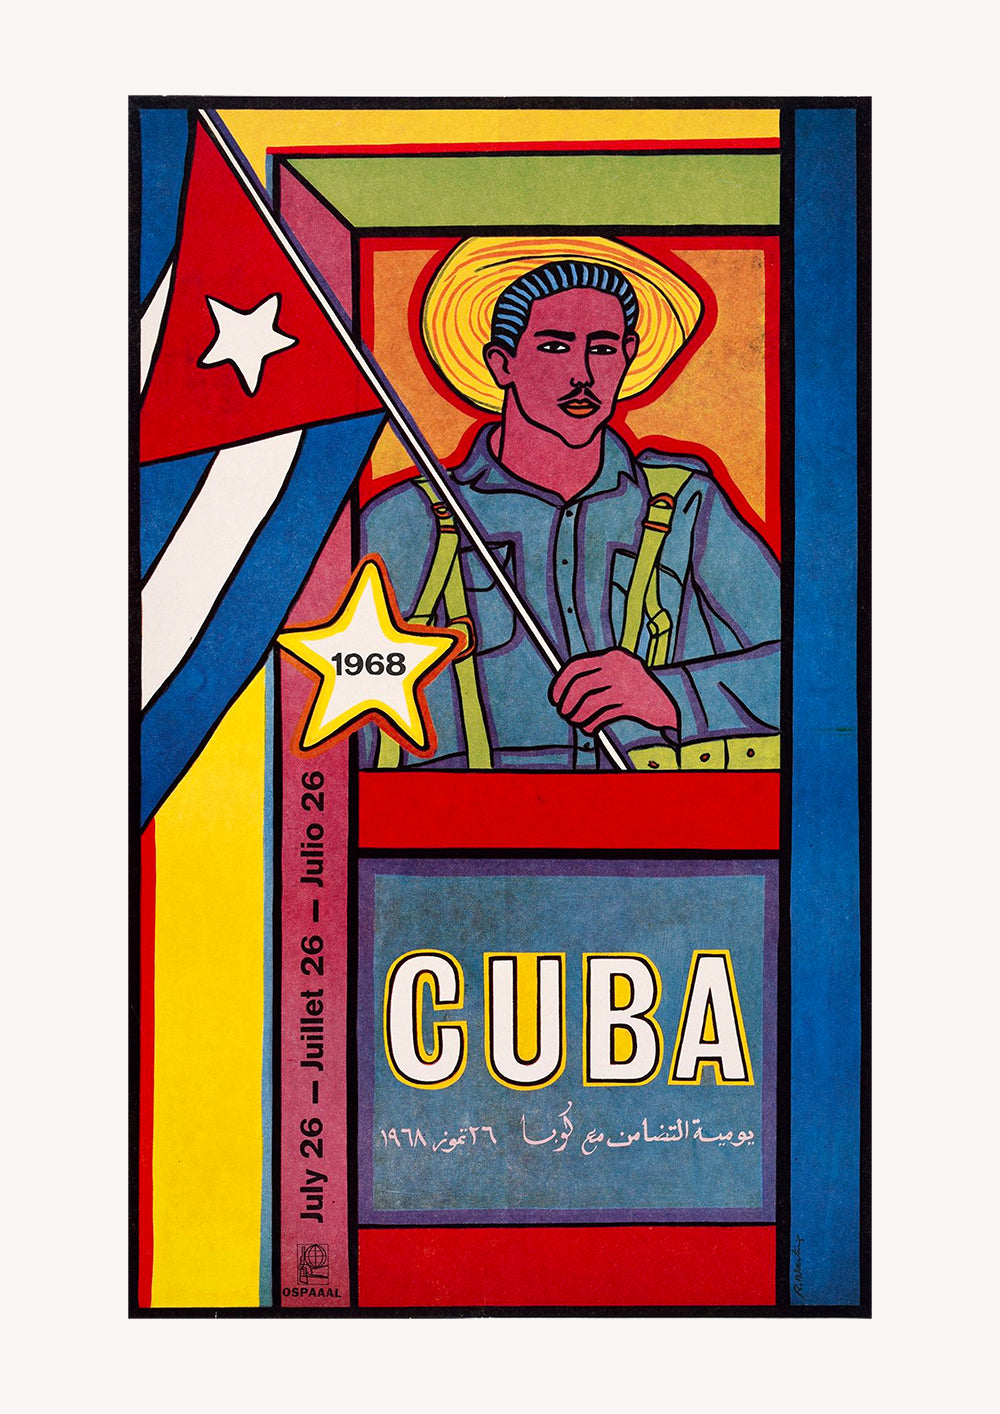 Cuban poster